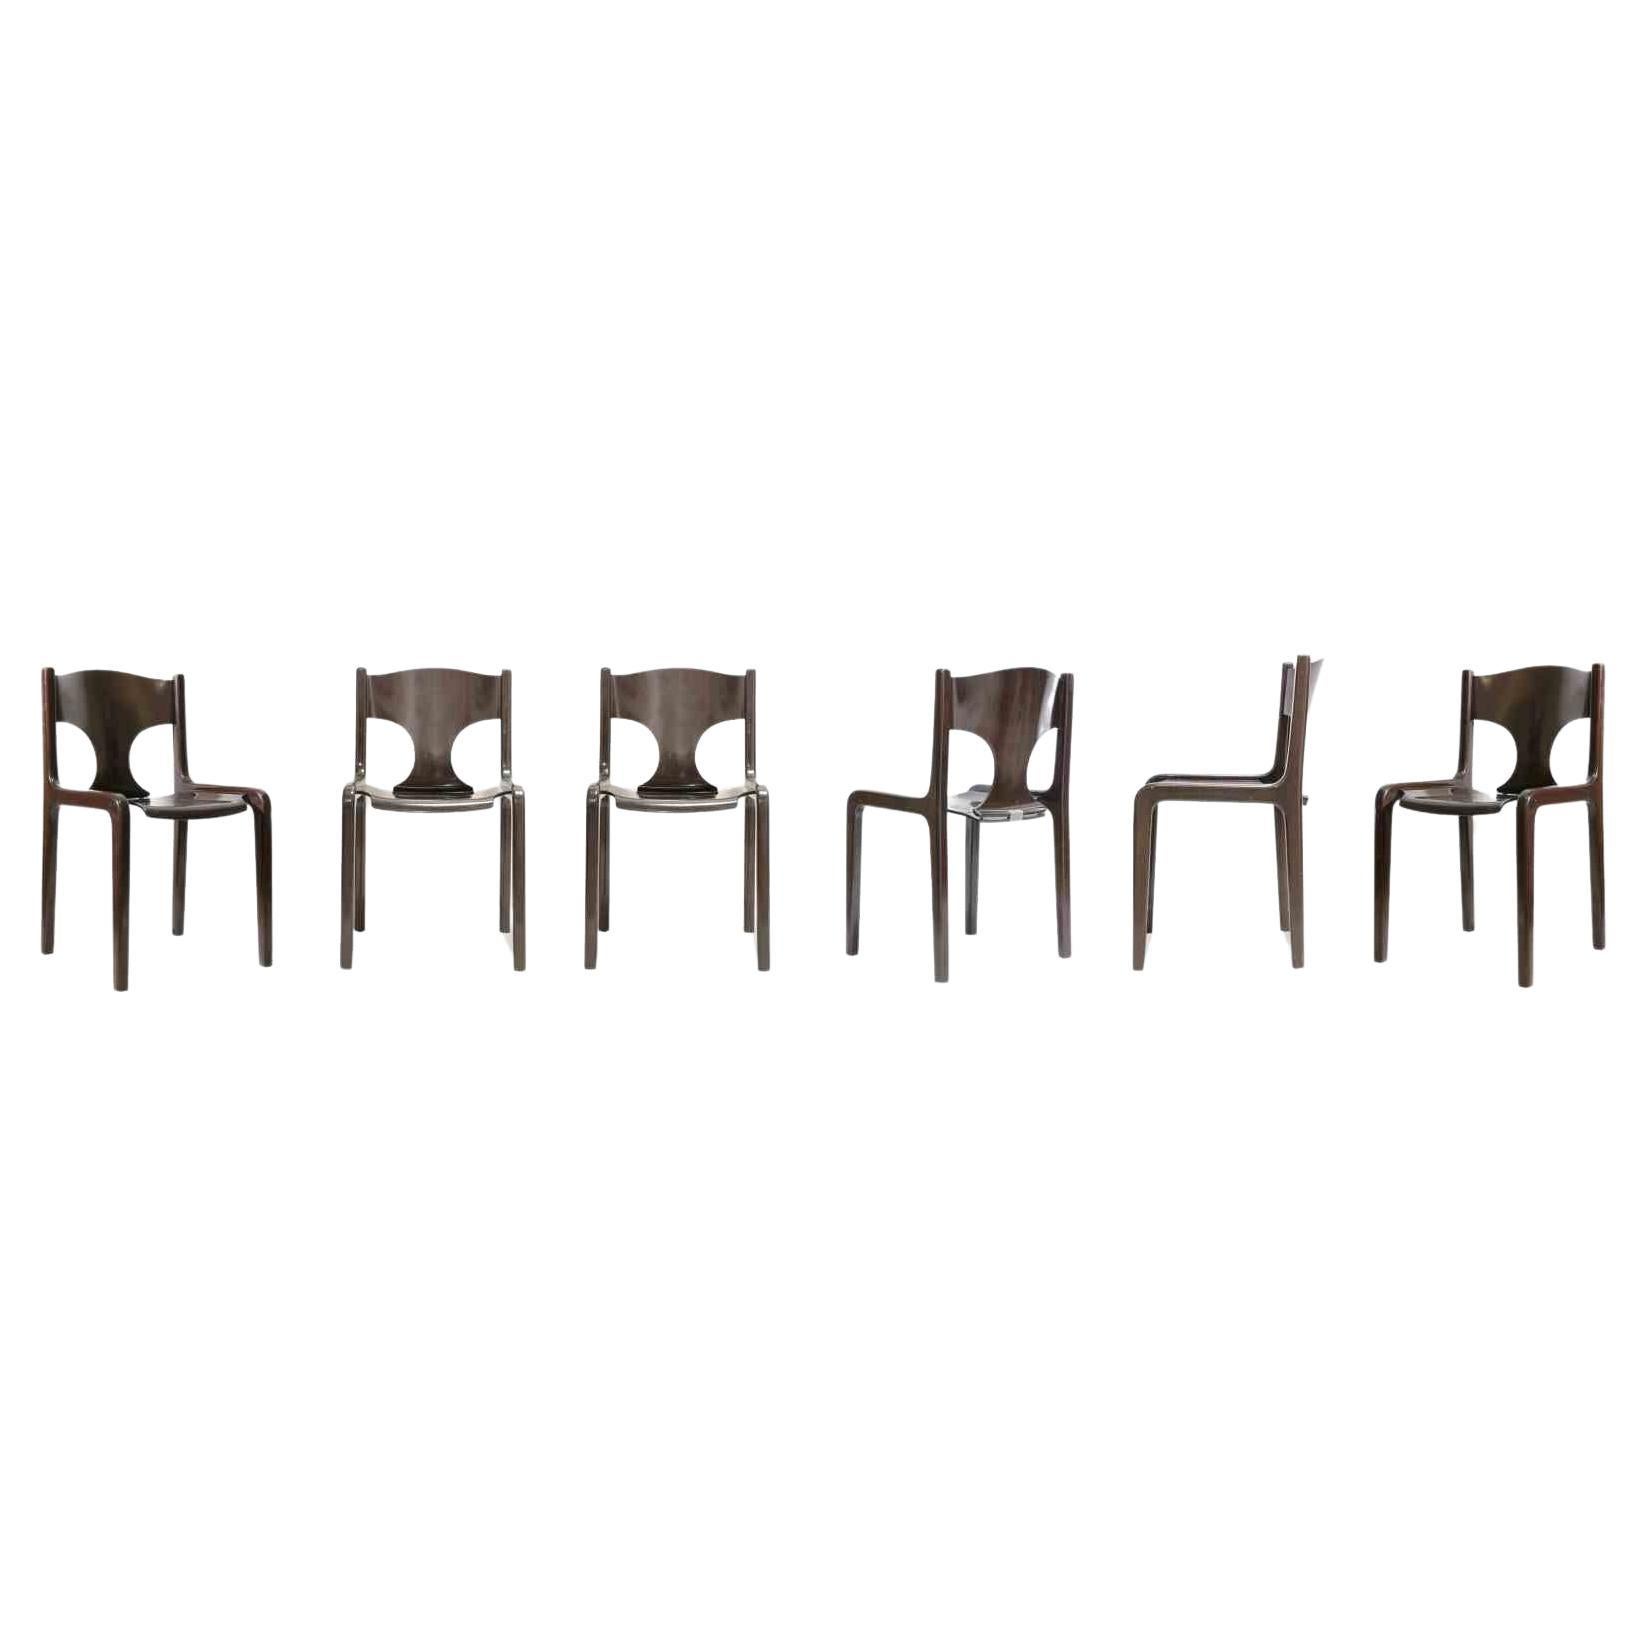 Cet ensemble de 6 chaises vintage est un meuble au design original réalisé par Augusto Bozzi dans les années 1970.

L'ensemble est composé de six chaises en bois avec des détails en laiton.

Augusto Bozzi (1924-1982) était un designer de meubles